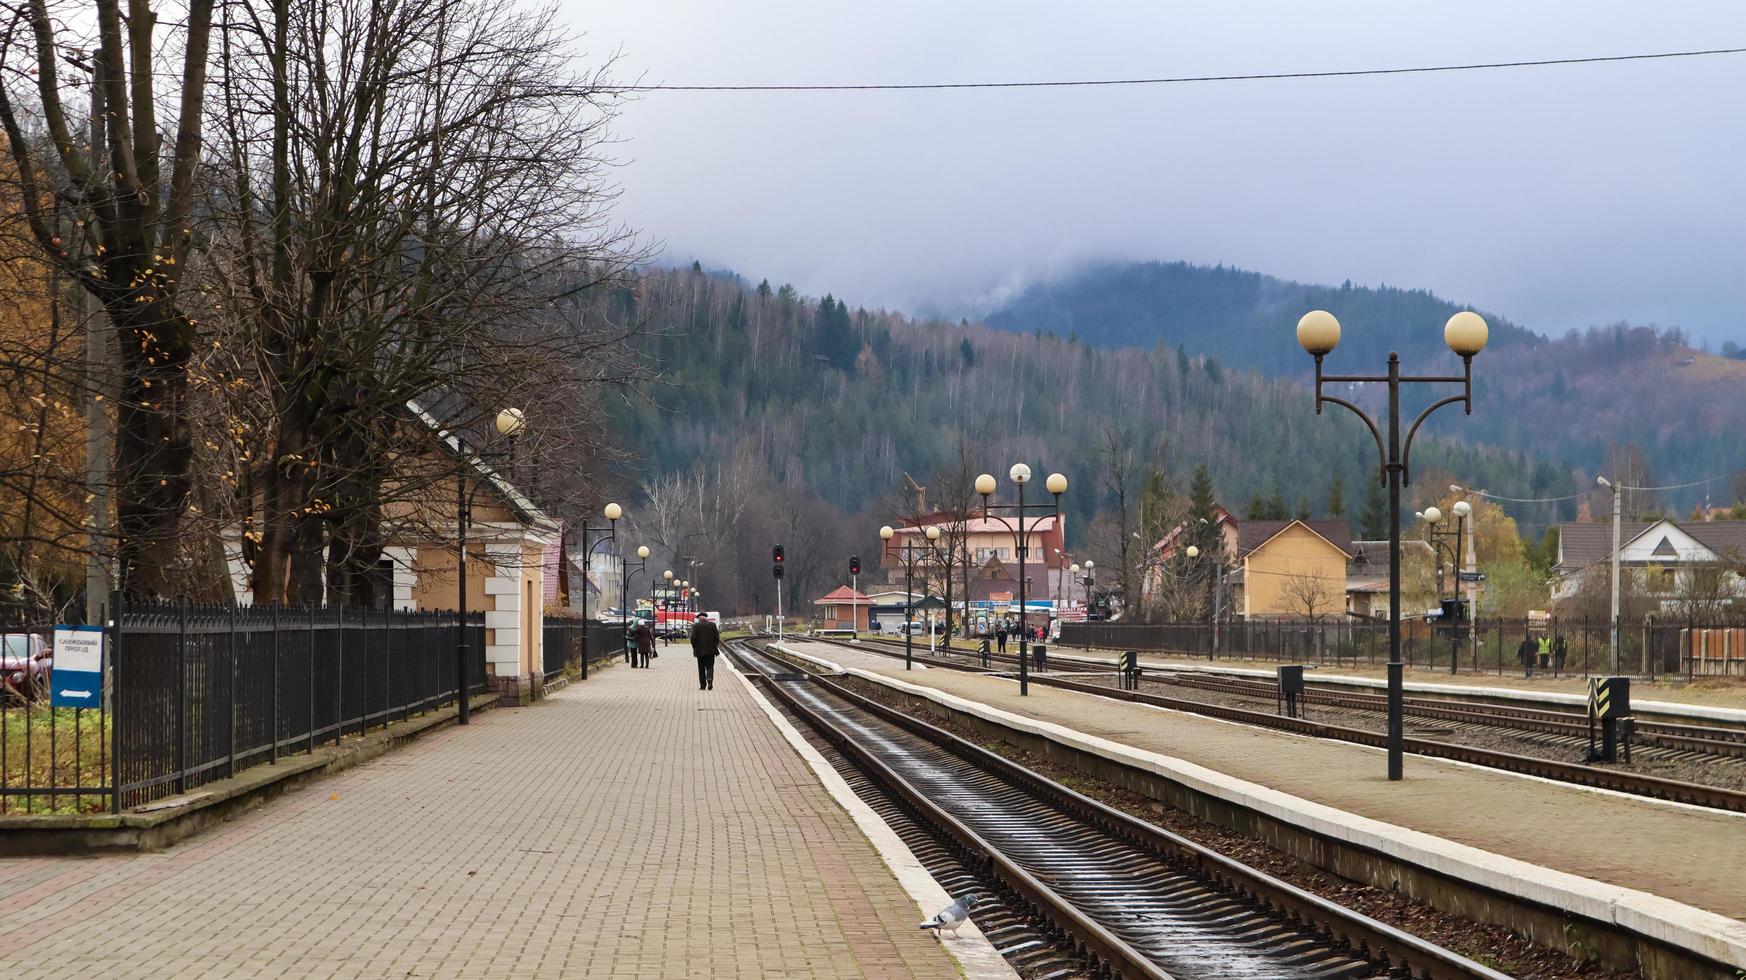 Ucrania, Yaremcha - 20 de noviembre de 2019. La estación de tren de la aldea de Yaremche en los Cárpatos. antigua estación de tren en una mañana nublada. hermosos paisajes en las montañas. foto